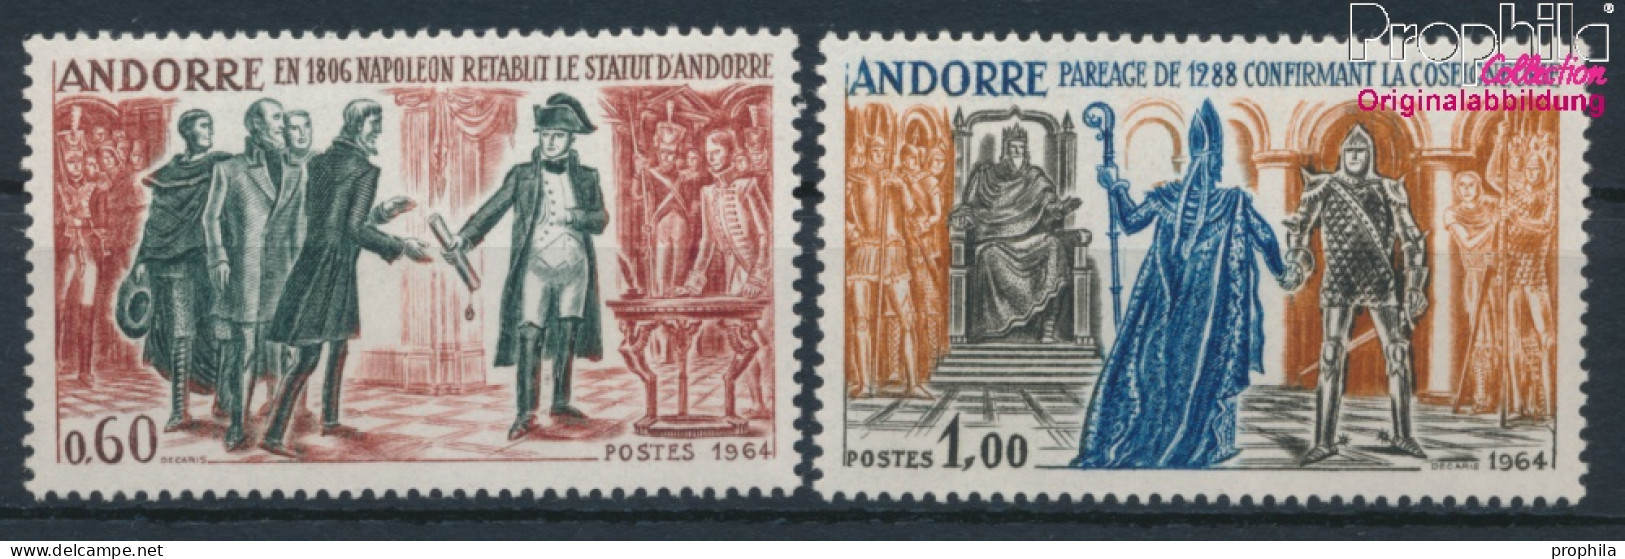 Andorra - Französische Post 183-184 (kompl.Ausg.) Postfrisch 1964 Geschichtsbilder (10368755 - Ungebraucht